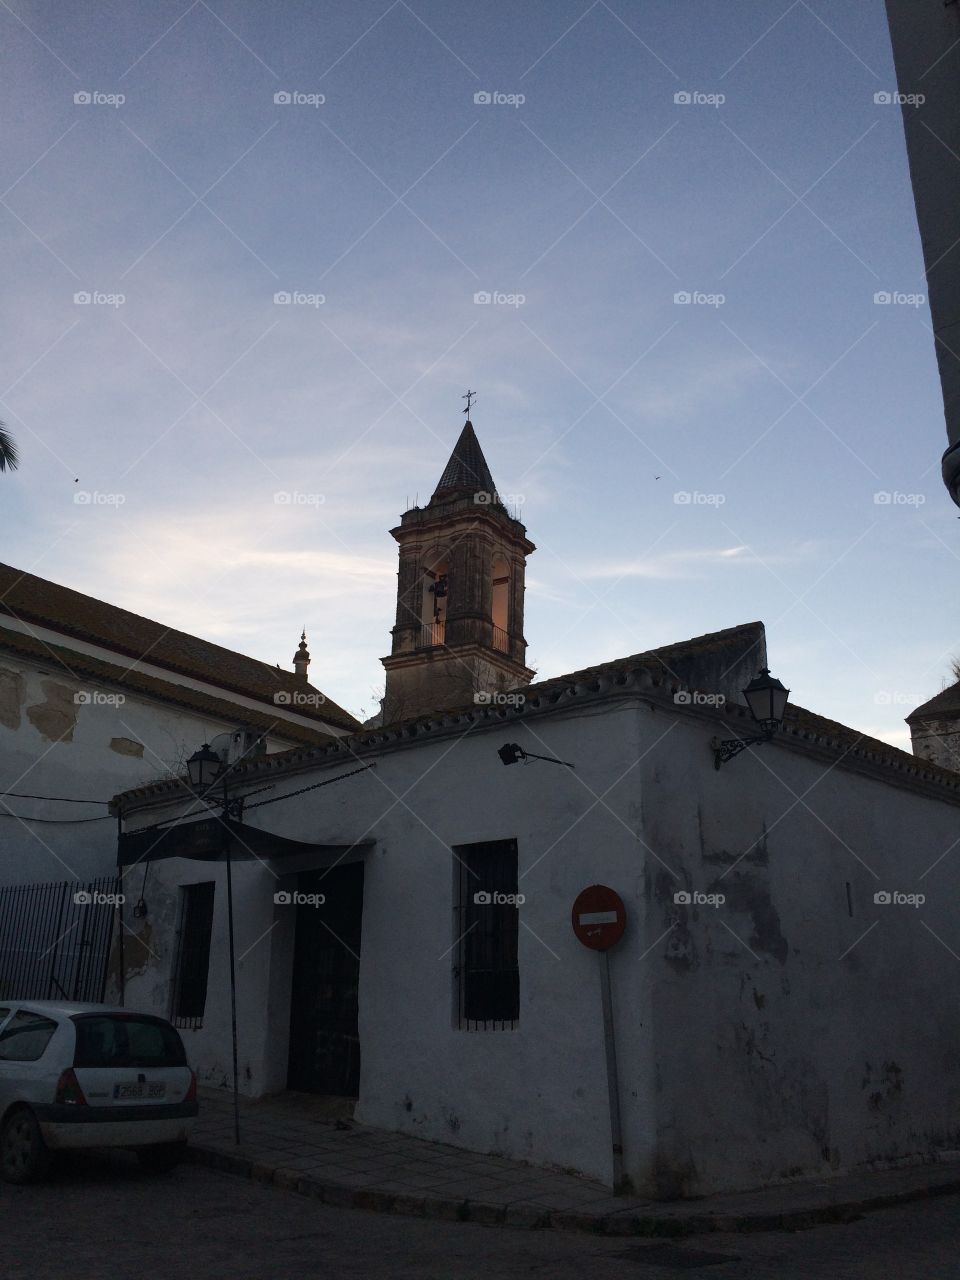 An old church in Sevilla Spain